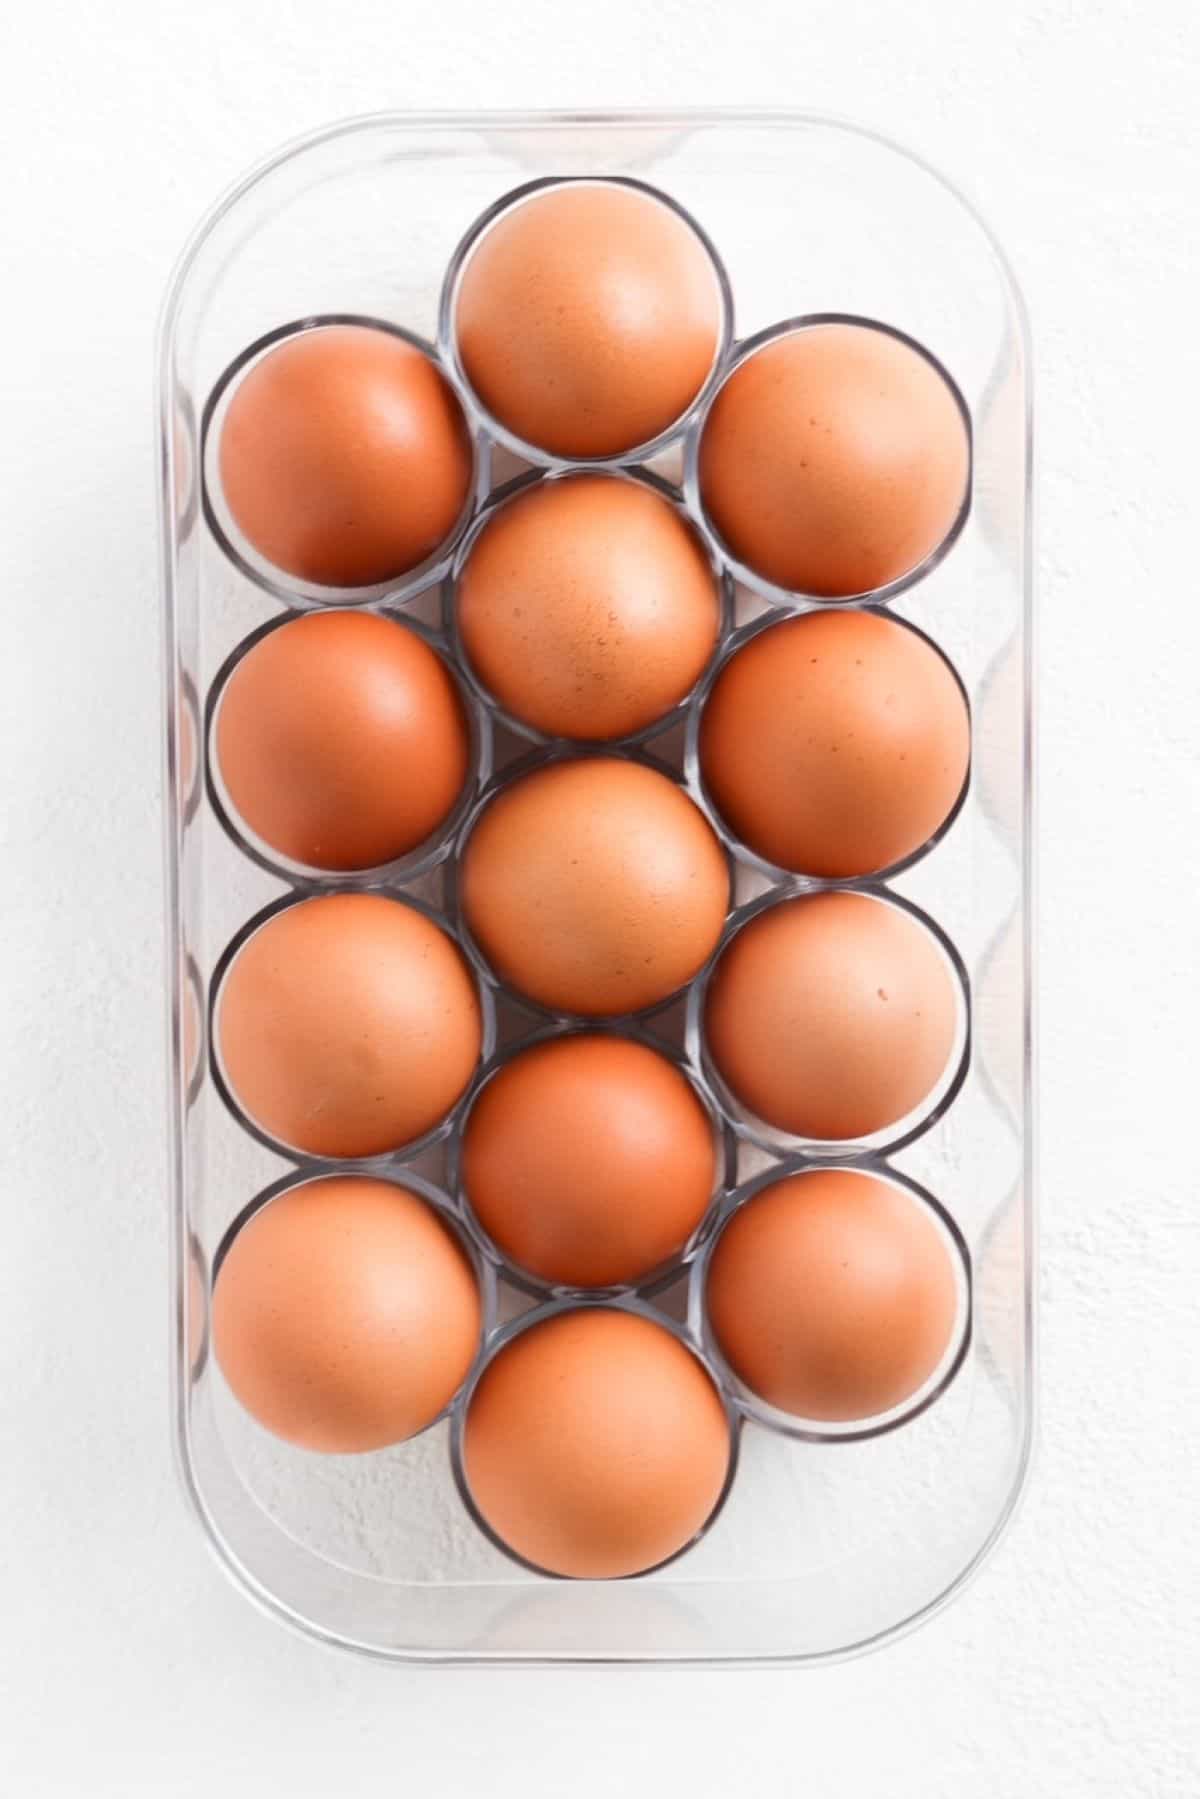 Fourteen brown eggs in a plastic egg holder.